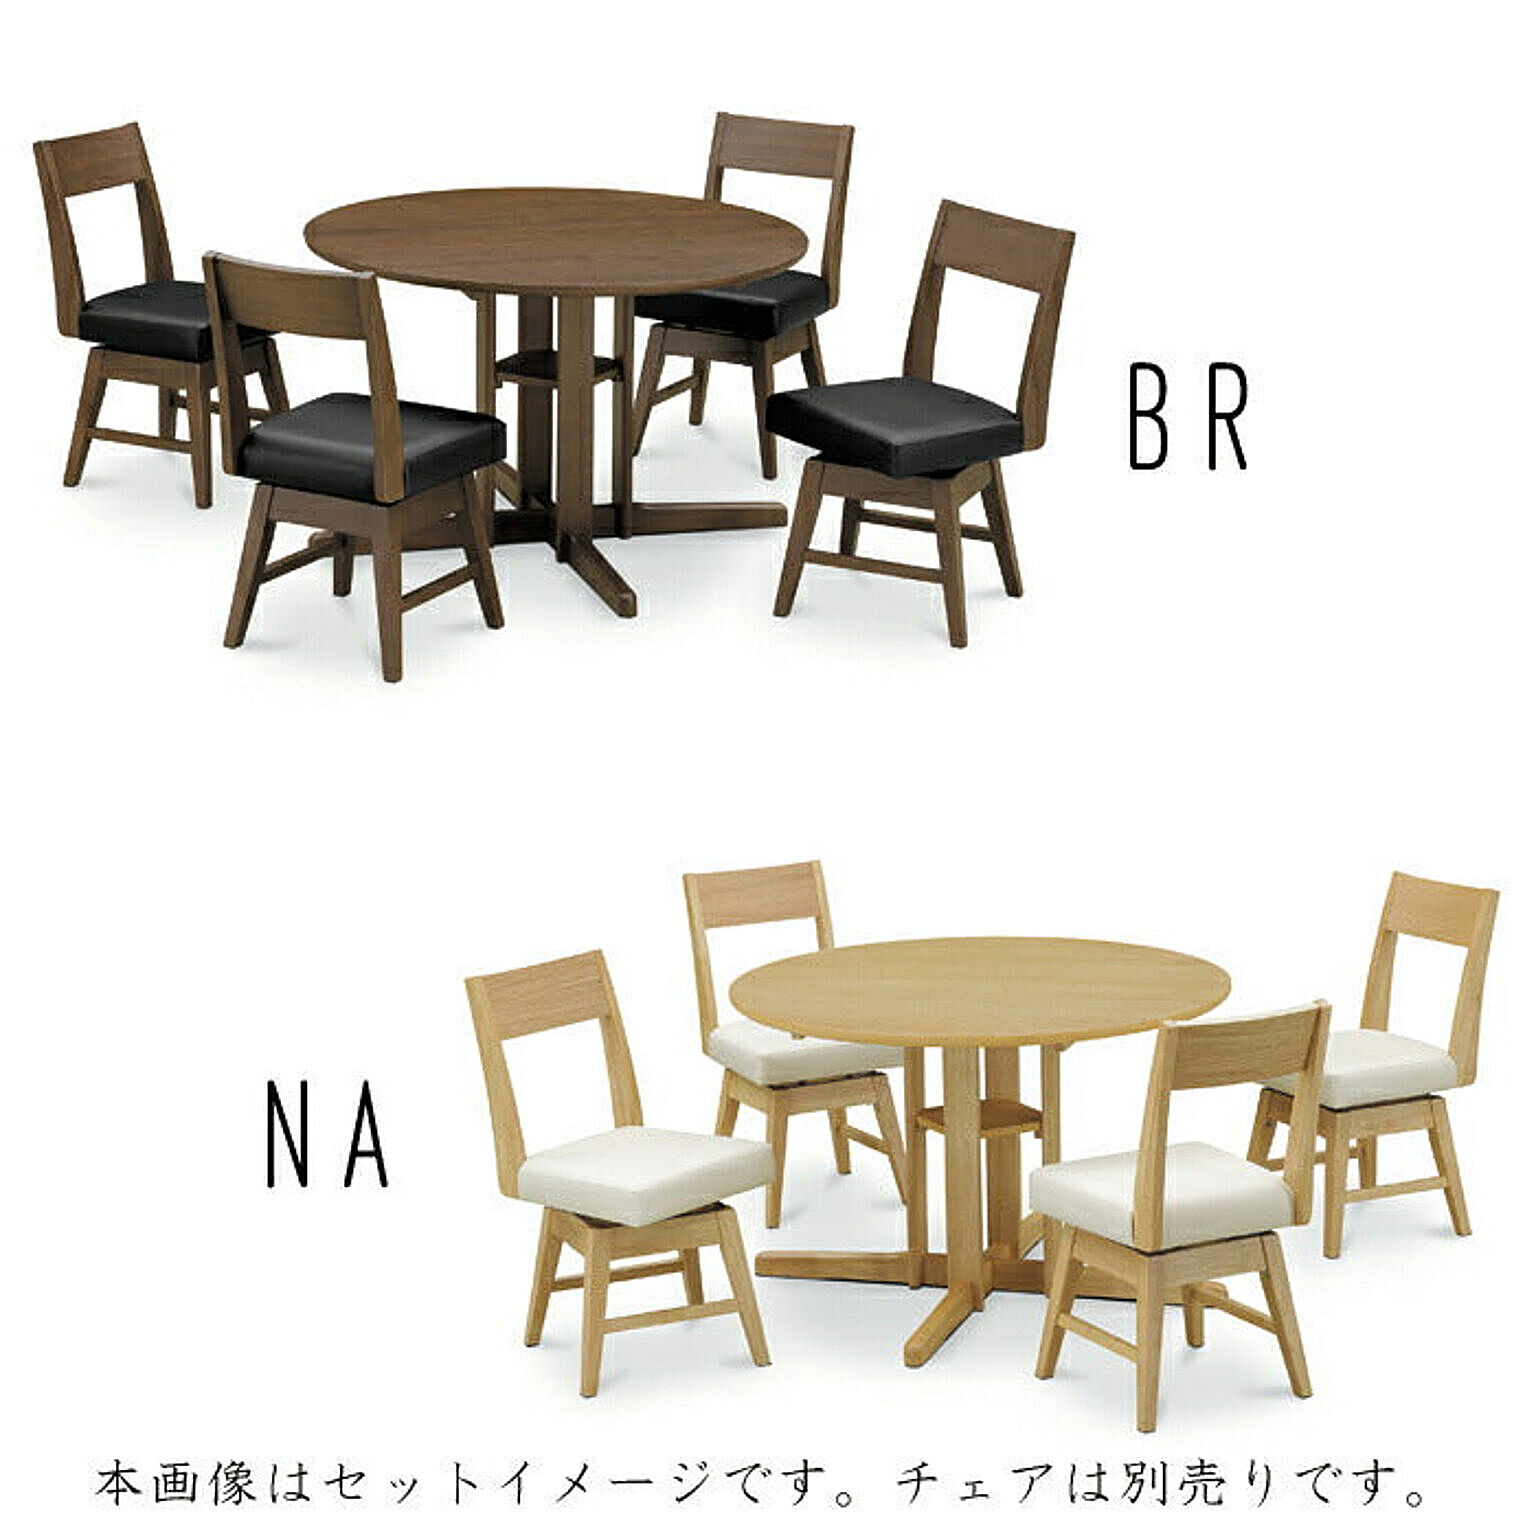 カフェテーブル・ティーテーブル